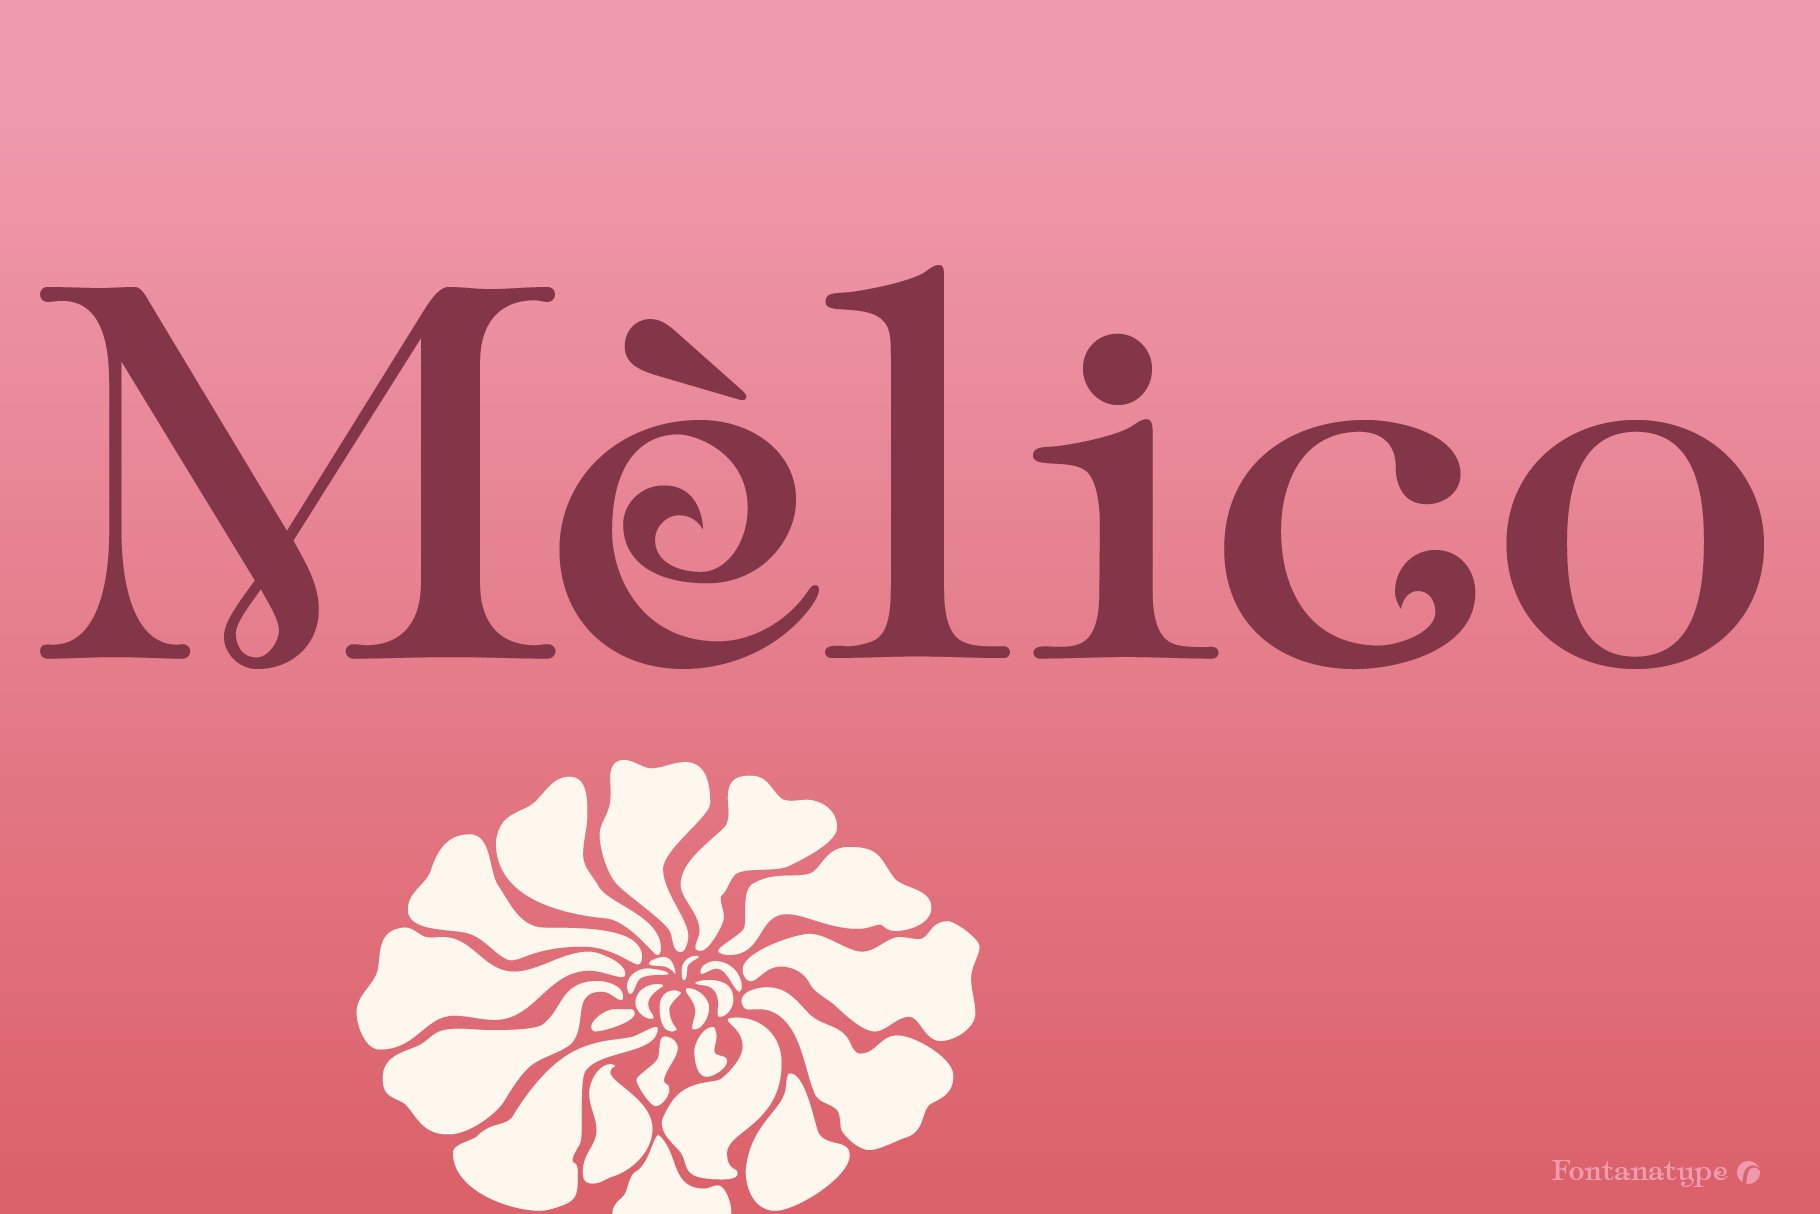 Mèlico cover image.